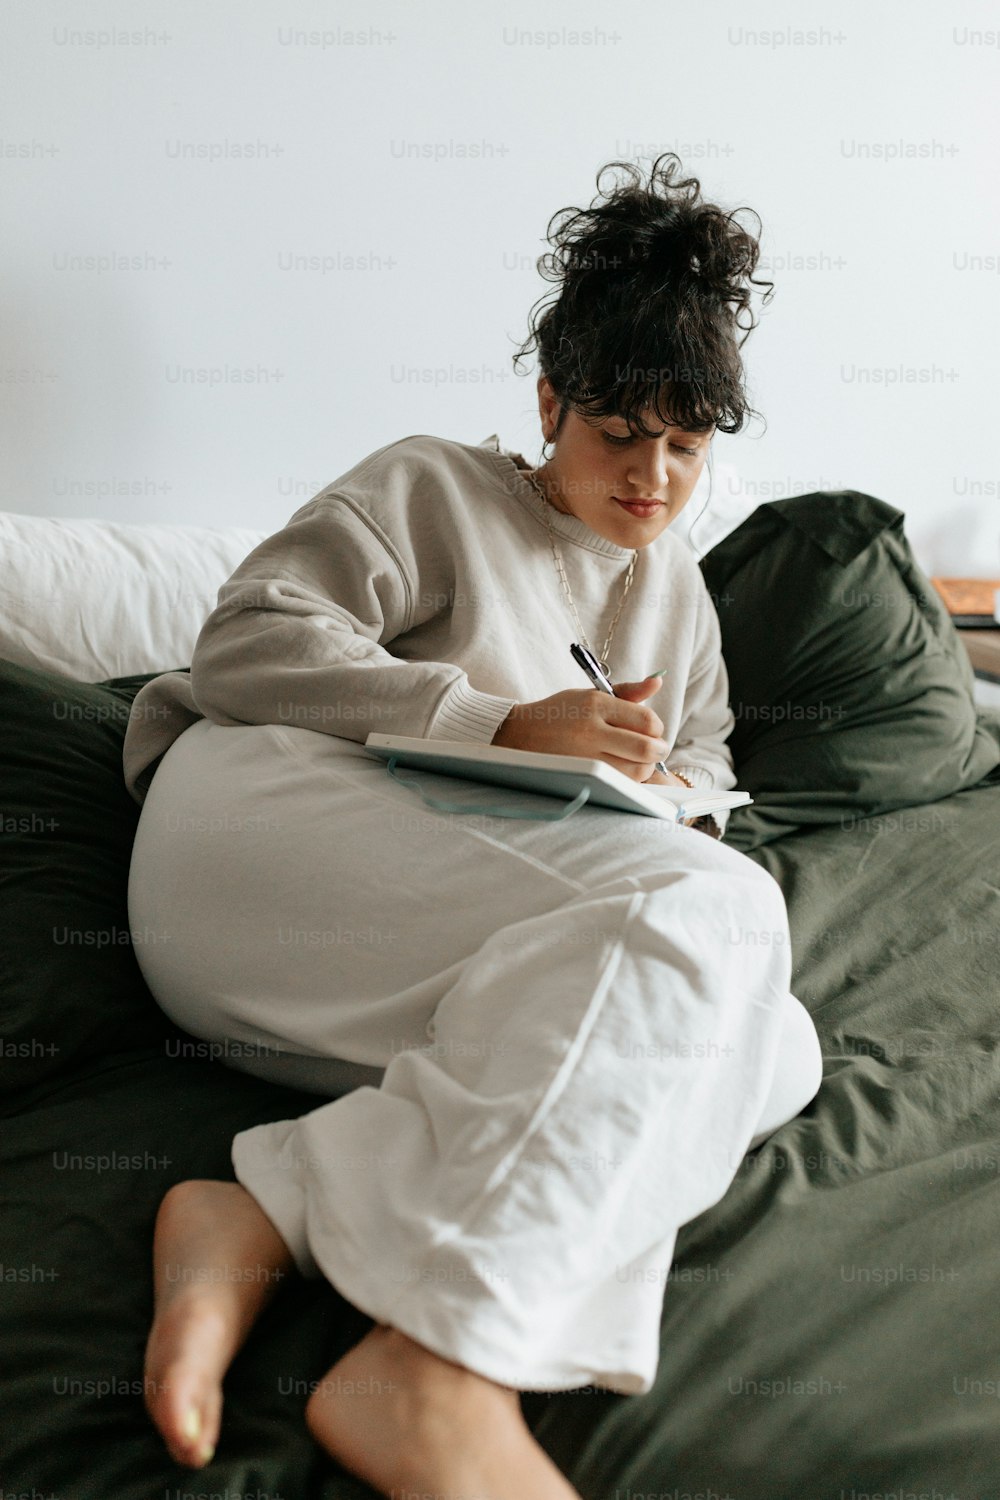 Une femme assise sur un lit écrivant sur un bloc-notes